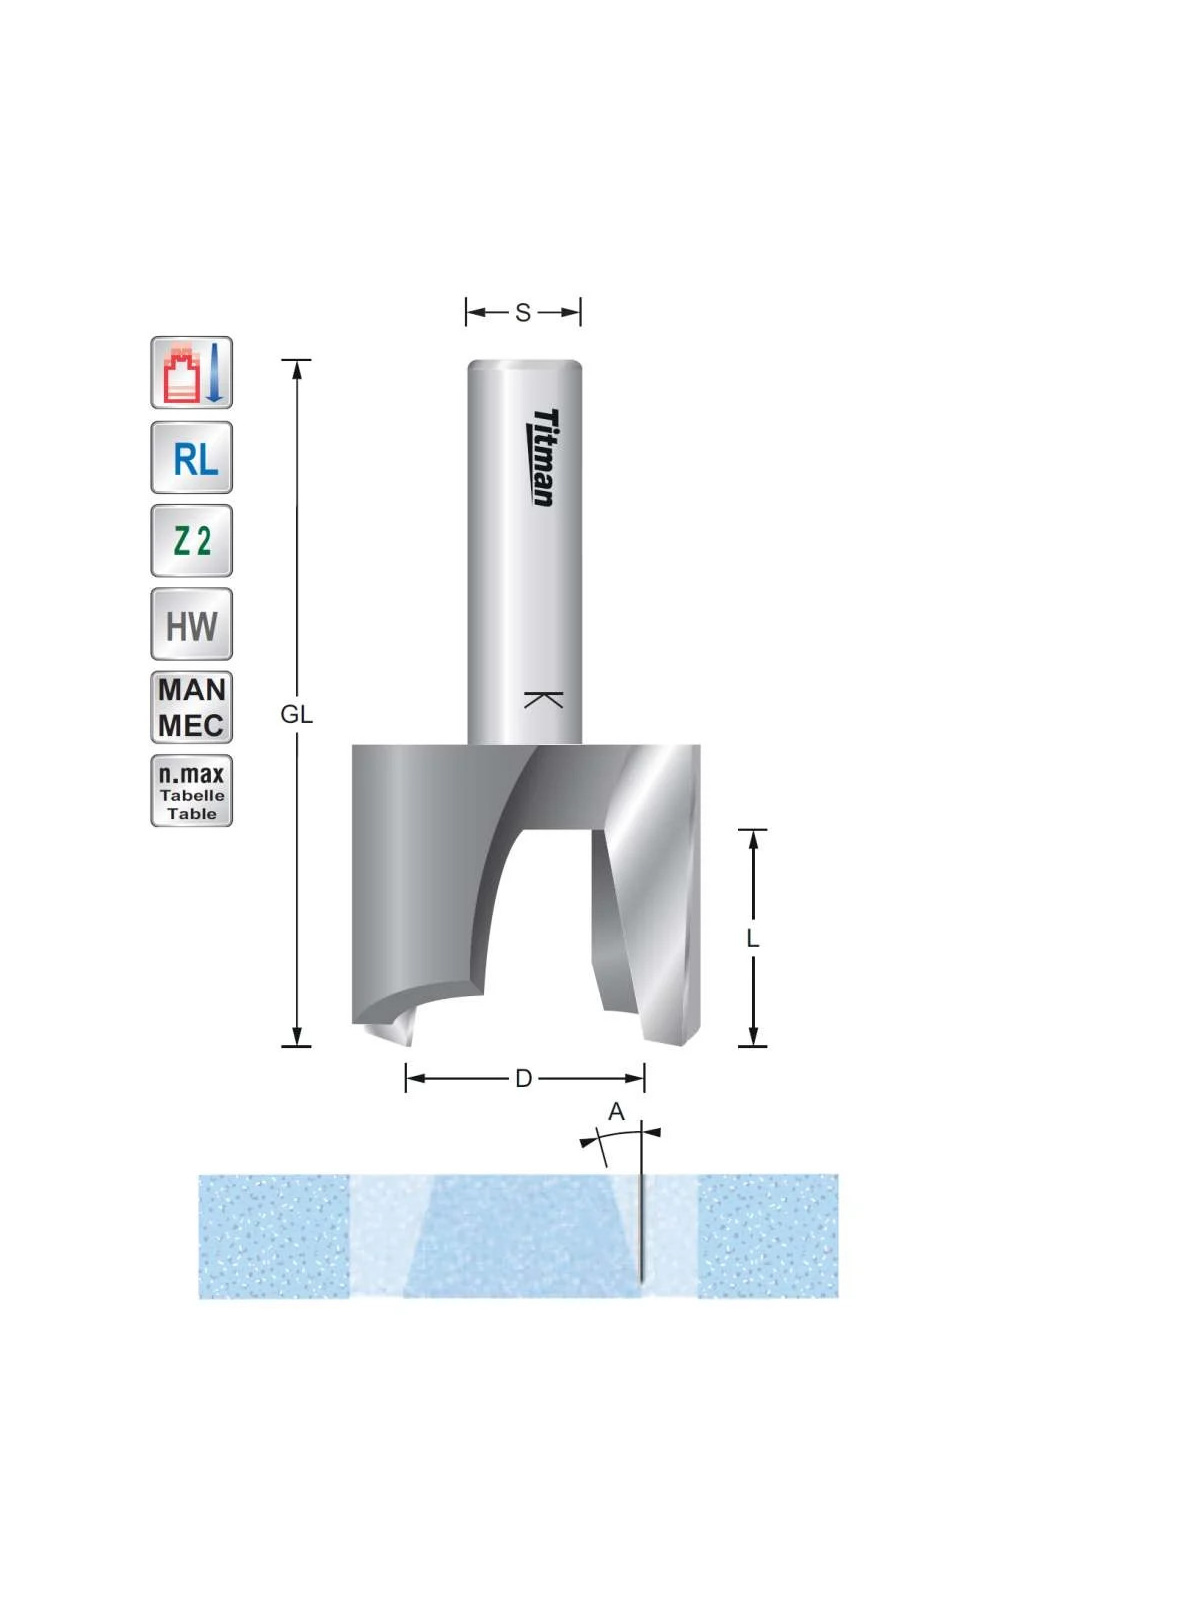 Proppen frees D45  S12mm voor reparatie van solid surface materiaal Titman | JVL-Europe